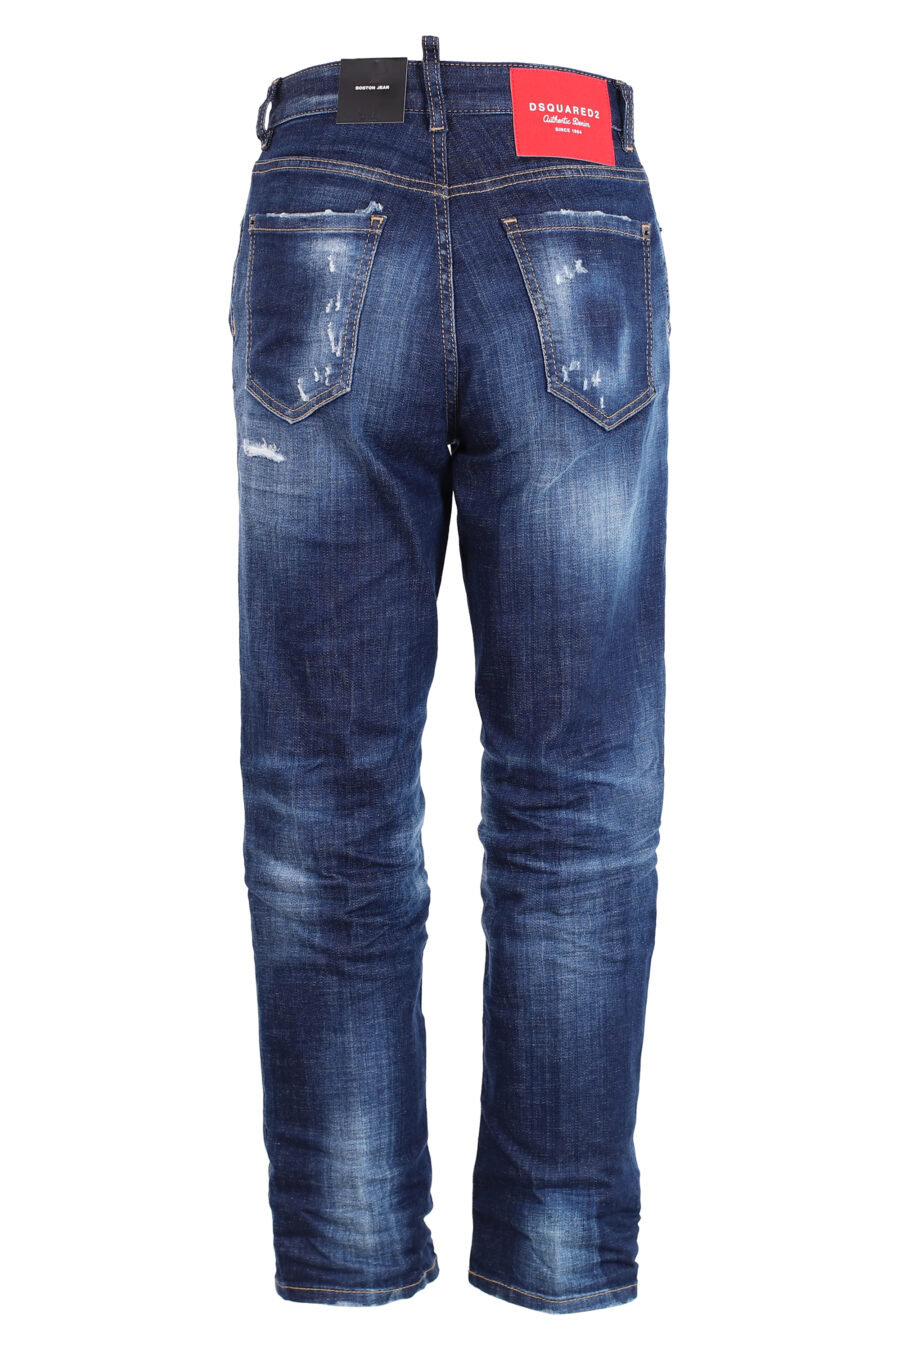 Jeans bleus "Boston Jean" - IMG 3307